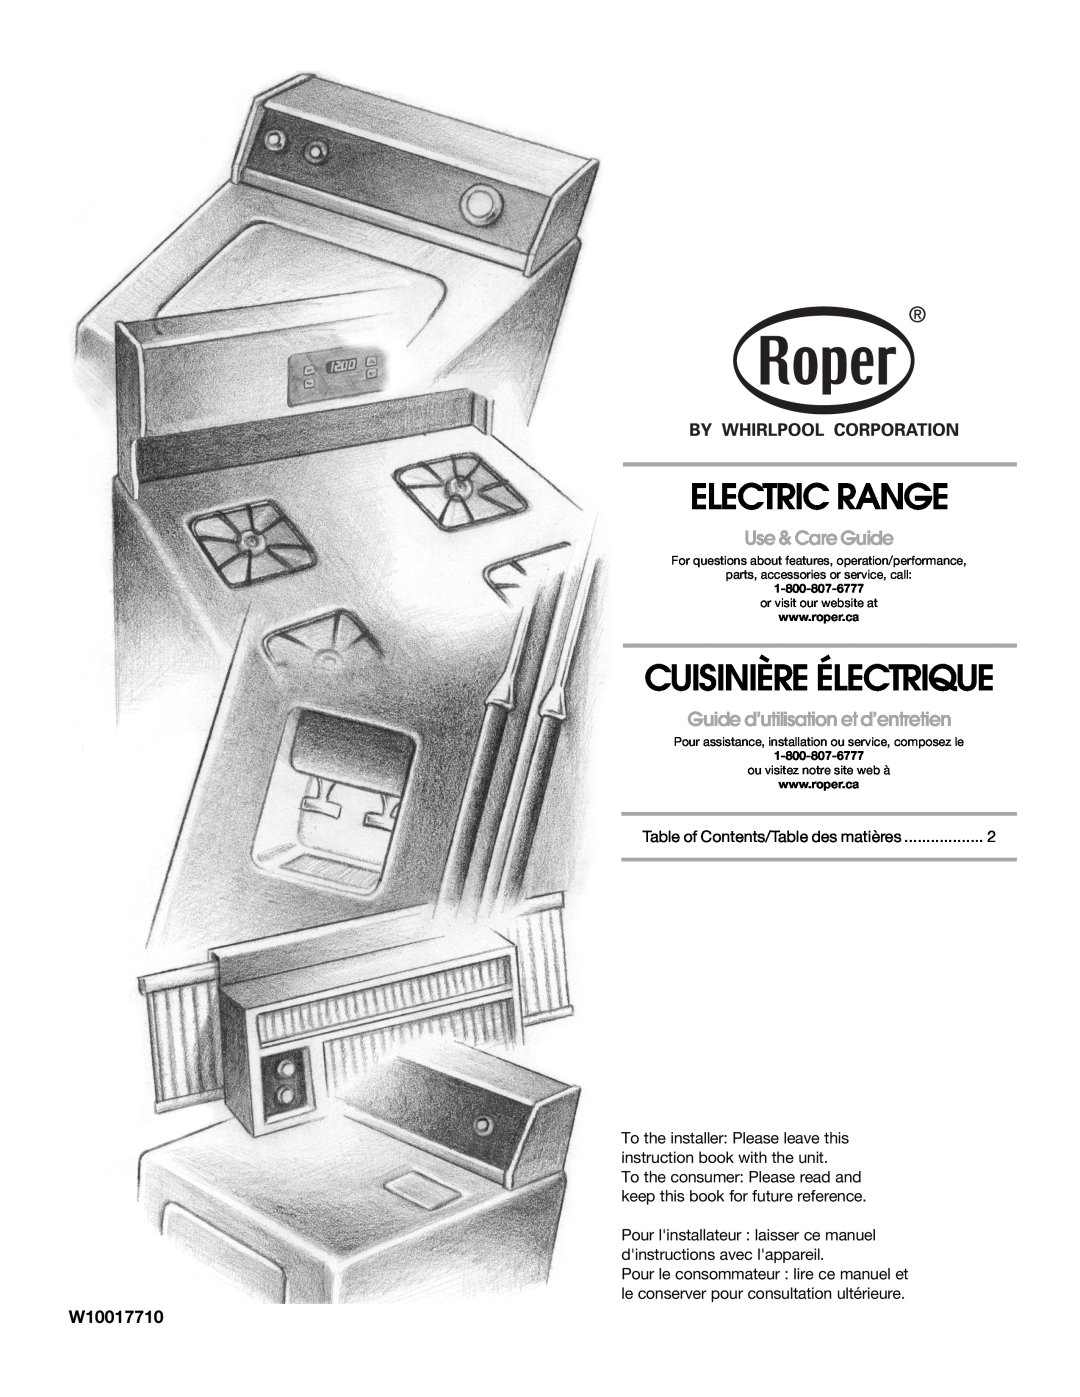 Whirlpool W10017710 manual Electric Range, Cuisinière Électrique, Use & Care Guide, Guide d’utilisation et d’entretien 